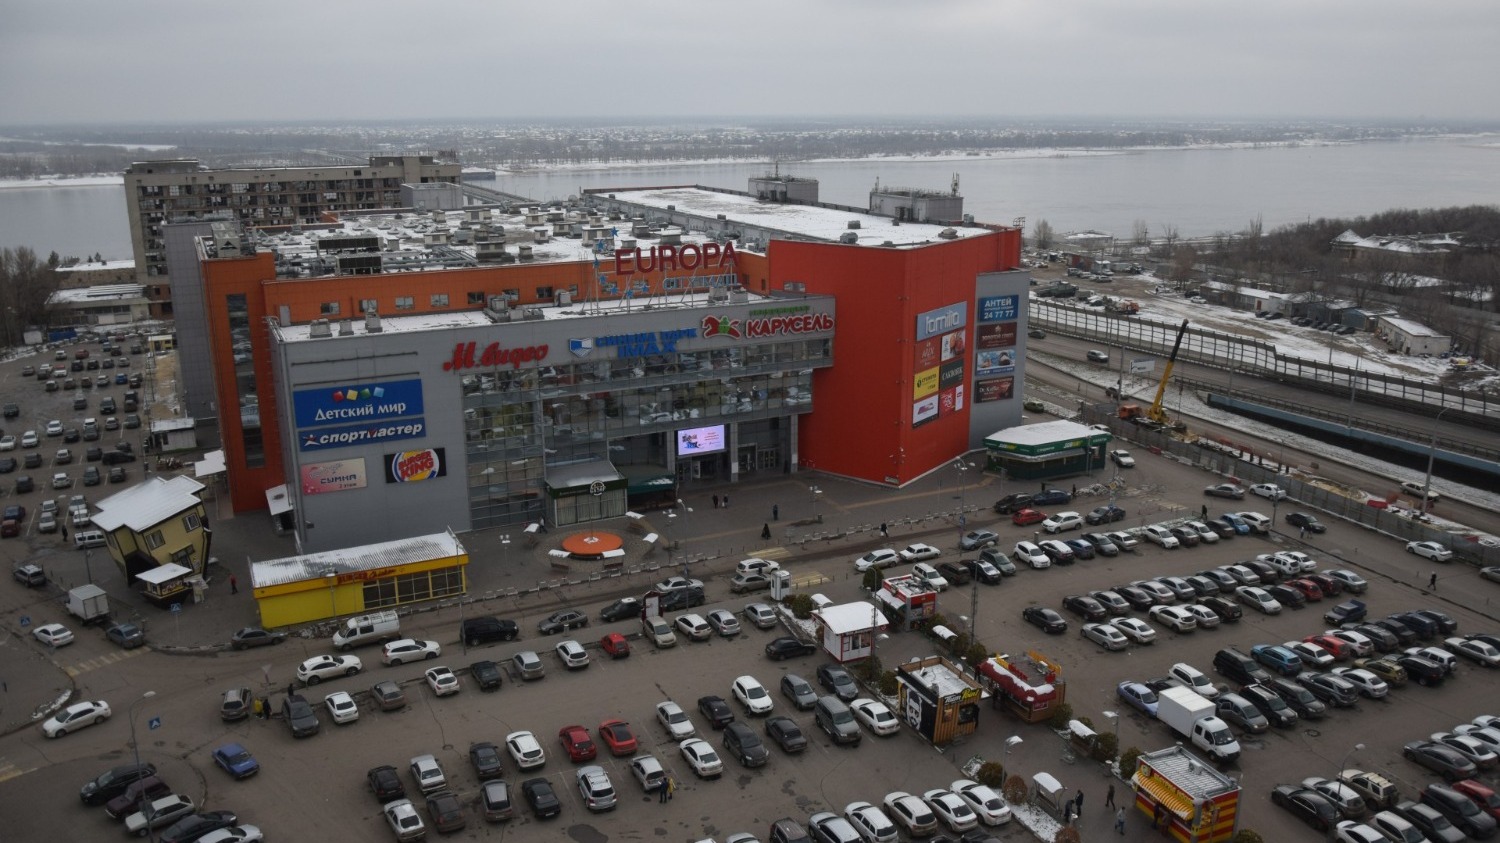 ТРК Европа Сити Молл в Волгограде пытаются продать с 2020 года